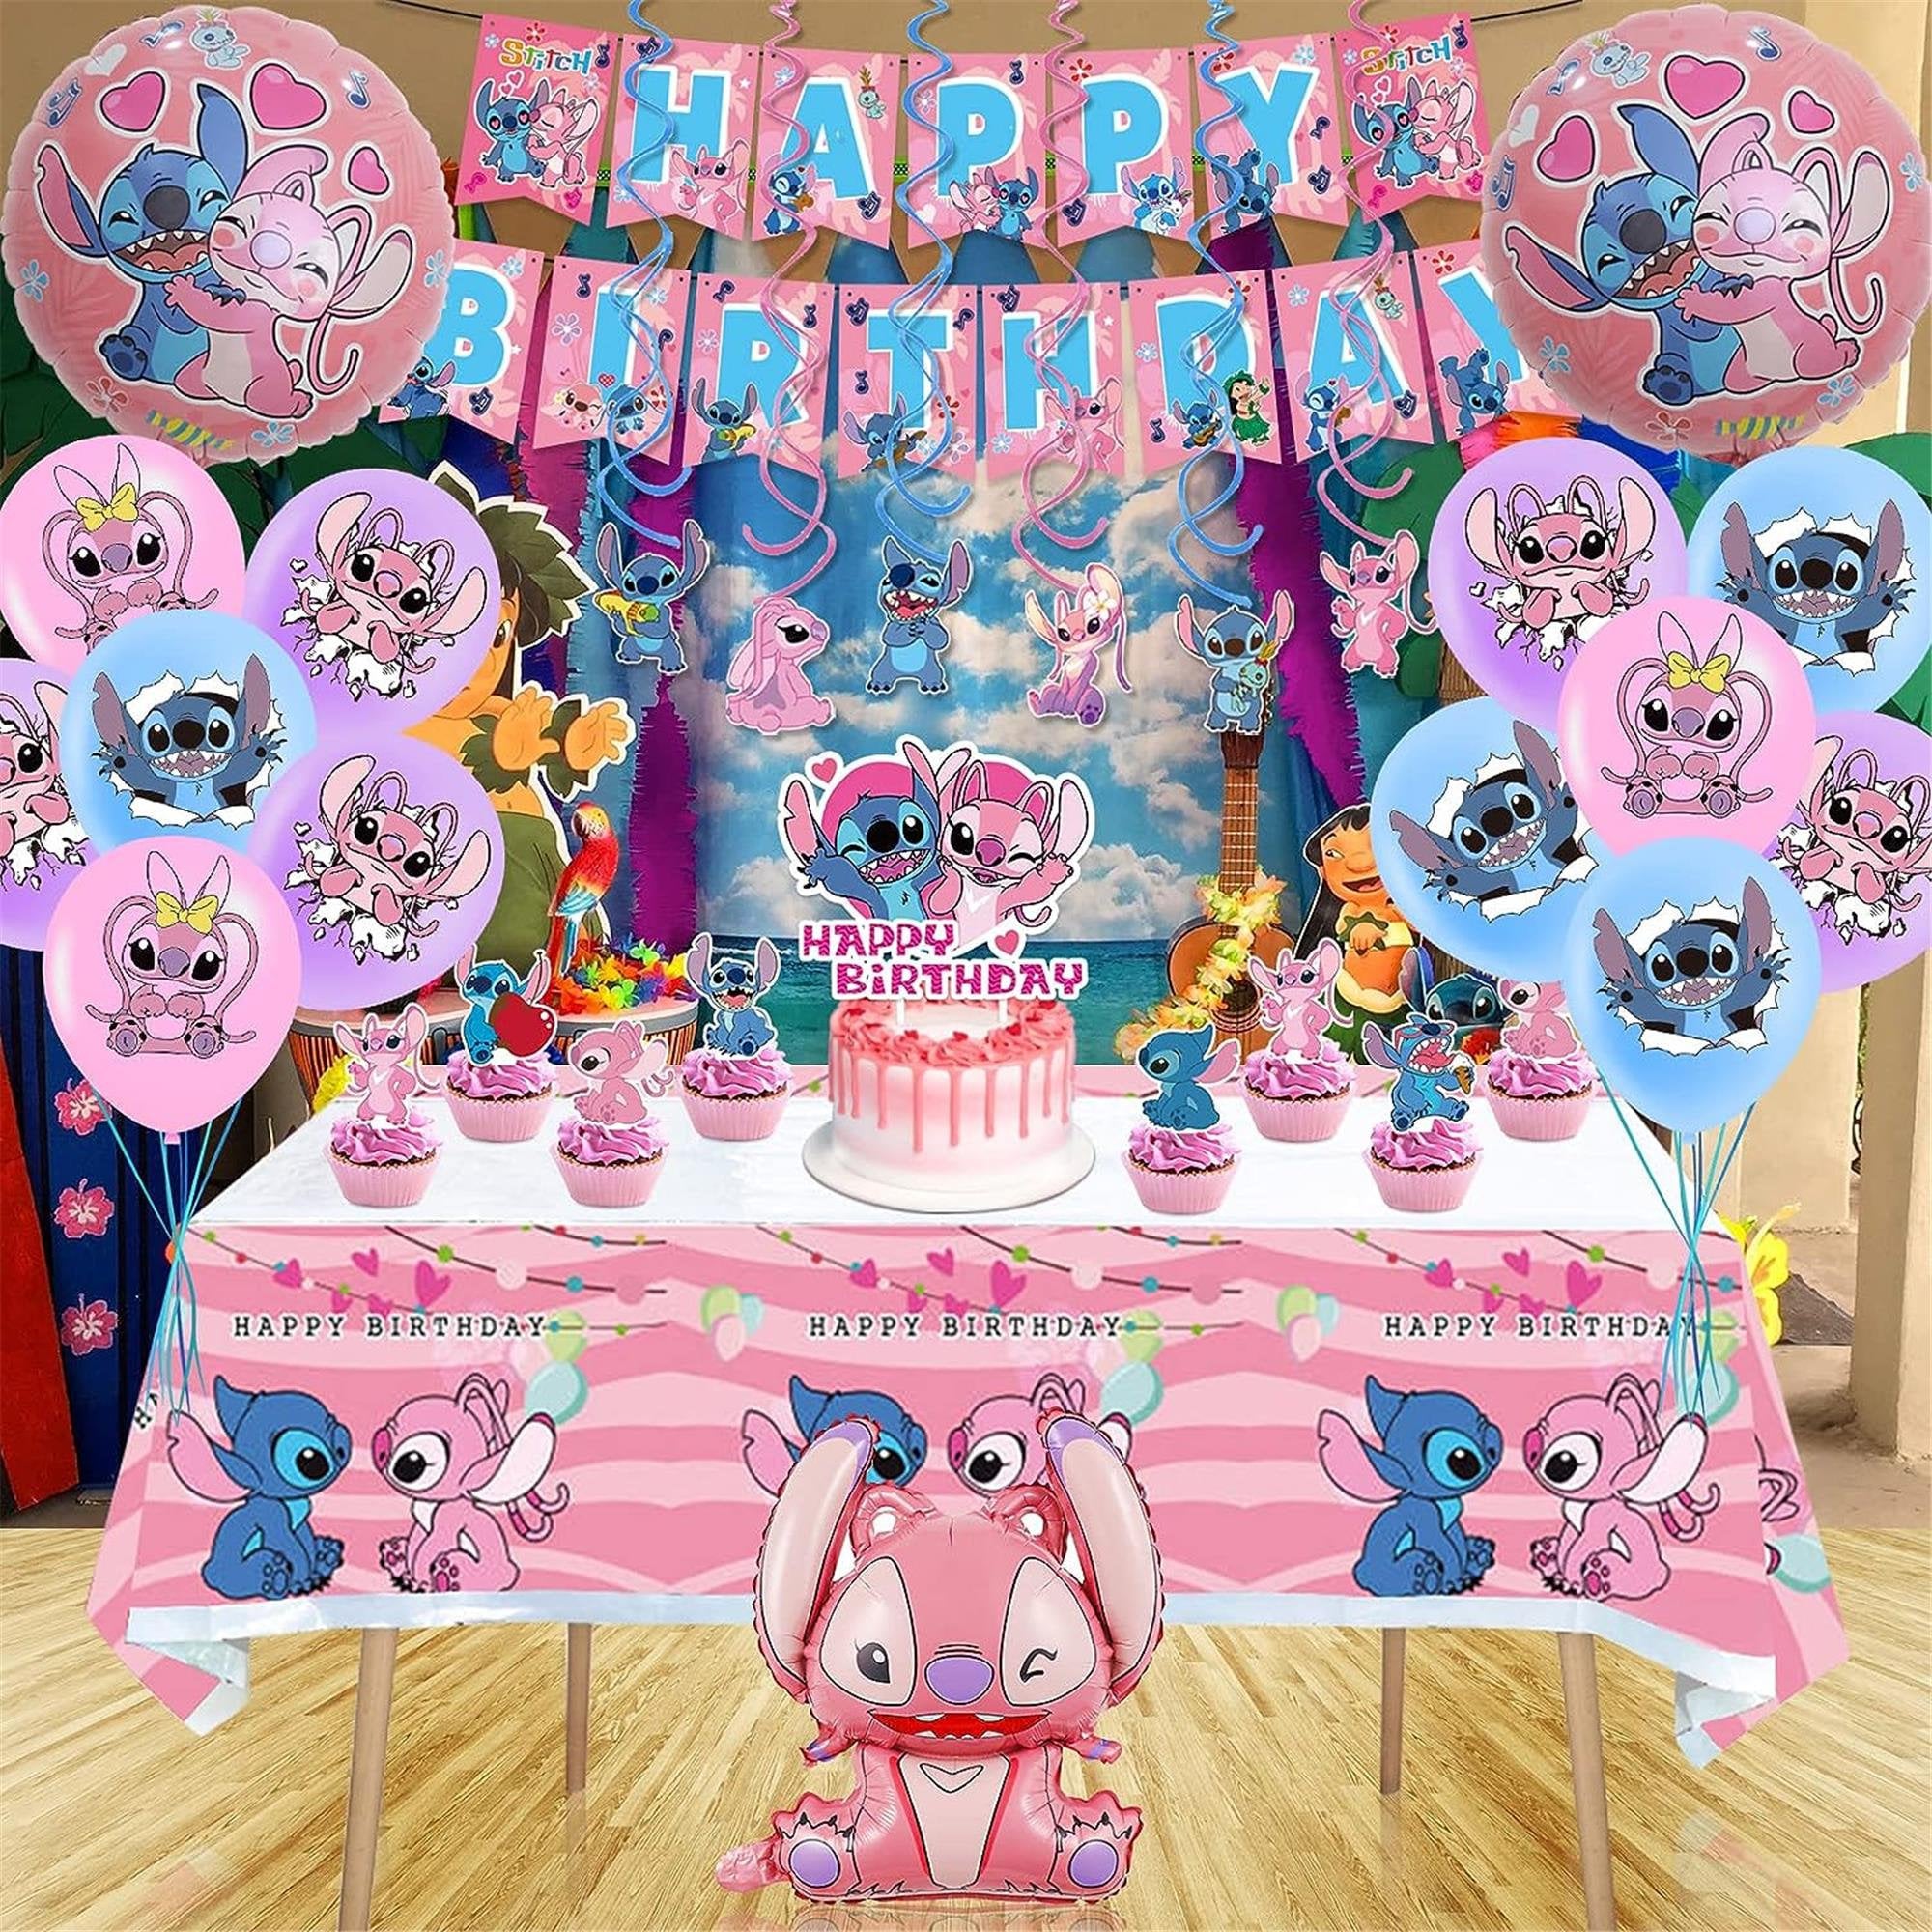  Suministros de fiesta de Lilo Stitch rosa, juego de decoraciones  de fiesta temática de Lilo Stitch rosa incluye globos de látex, pancarta de  feliz cumpleaños, decoración de pastel para decoraciones de